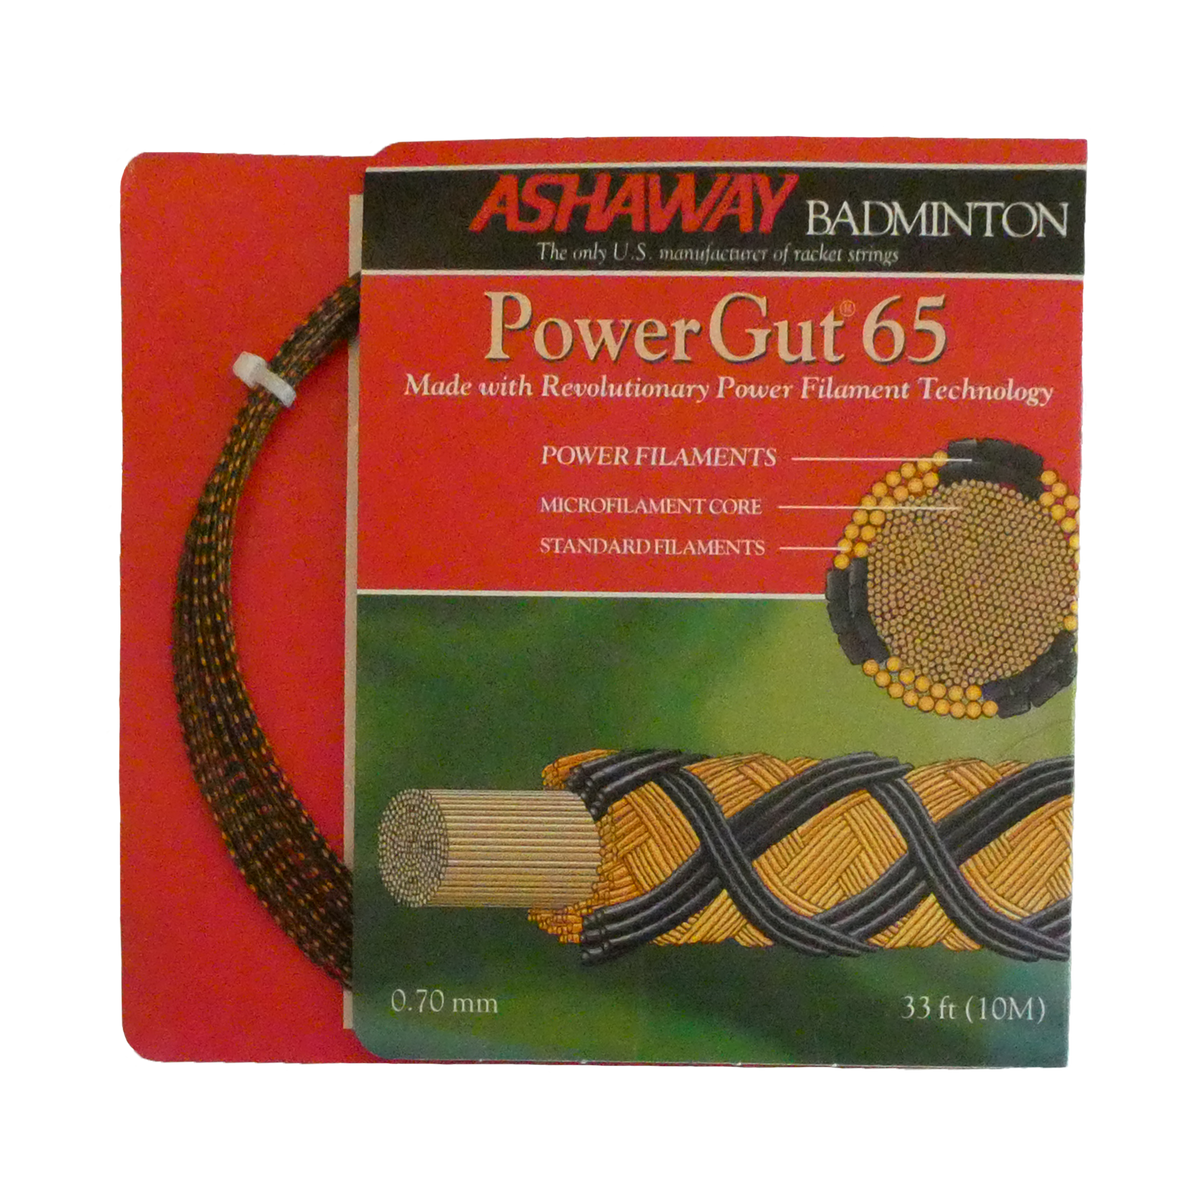 Ashaway PowerGut 65 Badminton String, Brown with orange spiral, 10 M SET